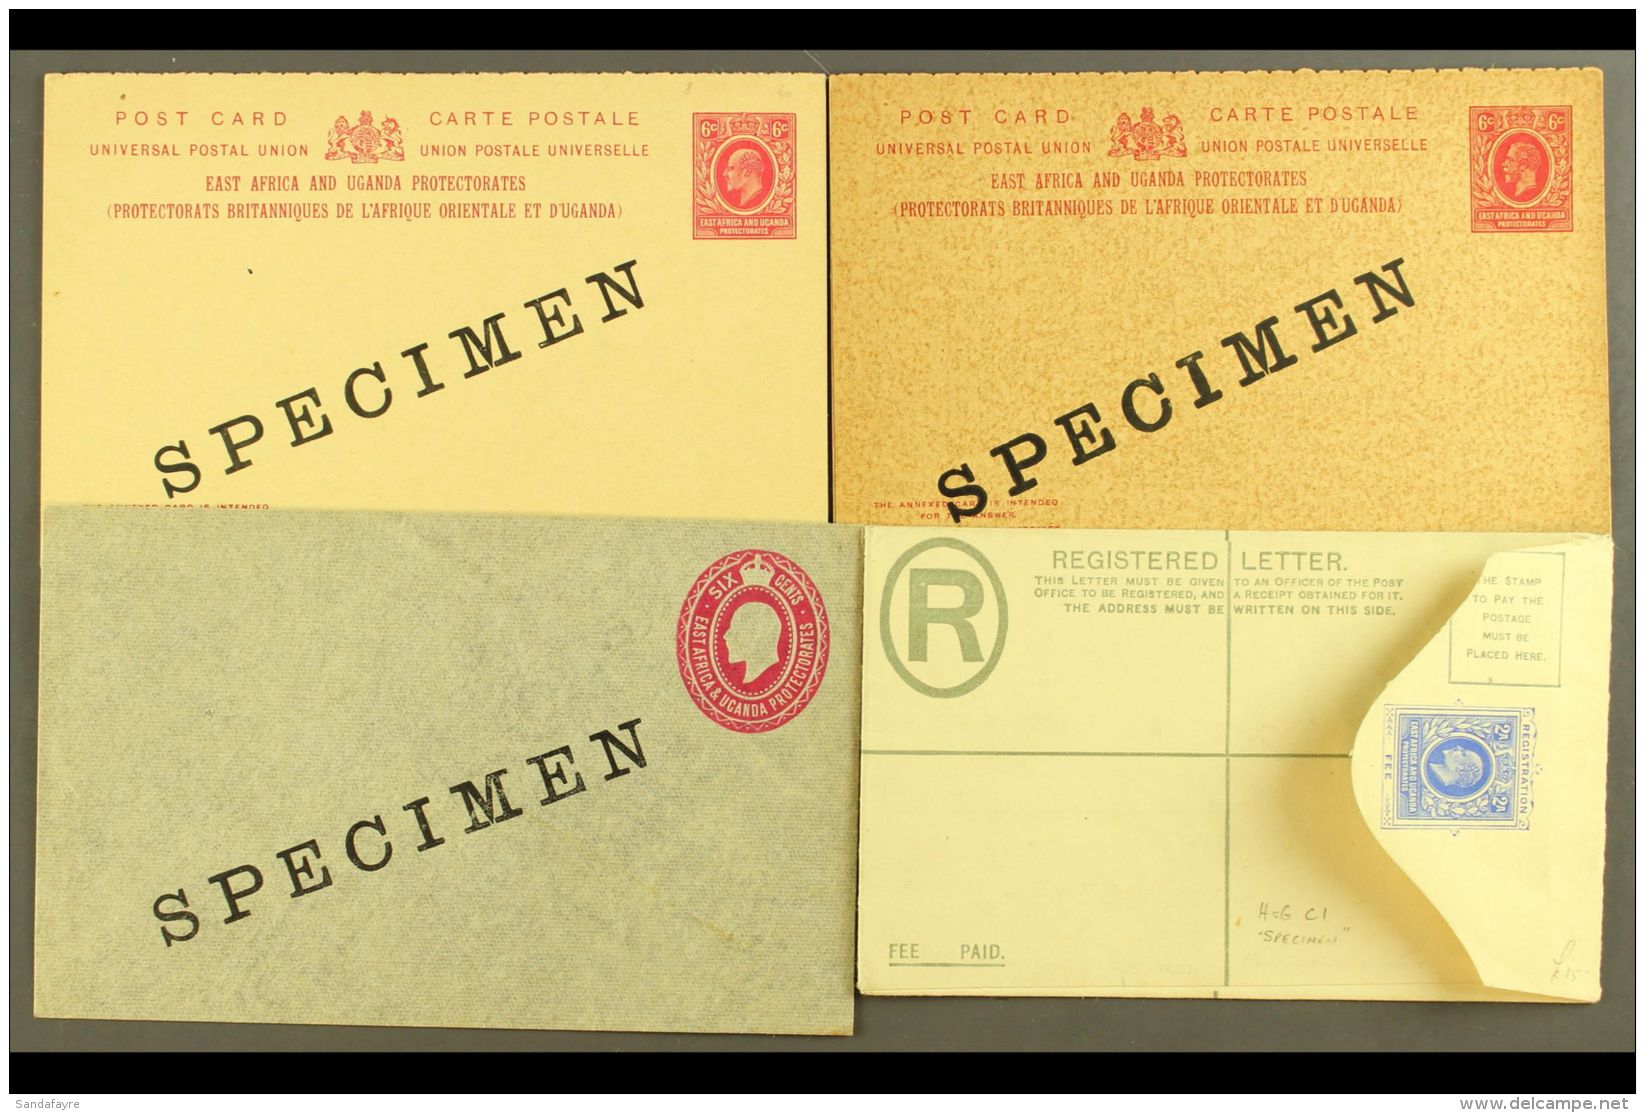 POSTAL STATIONERY "SPECIMEN" EXAMPLES. A Range Of "SPECIMEN" Overprints With Postcards 1907 6c + 6c, 1912 6c + 6c;... - Vide